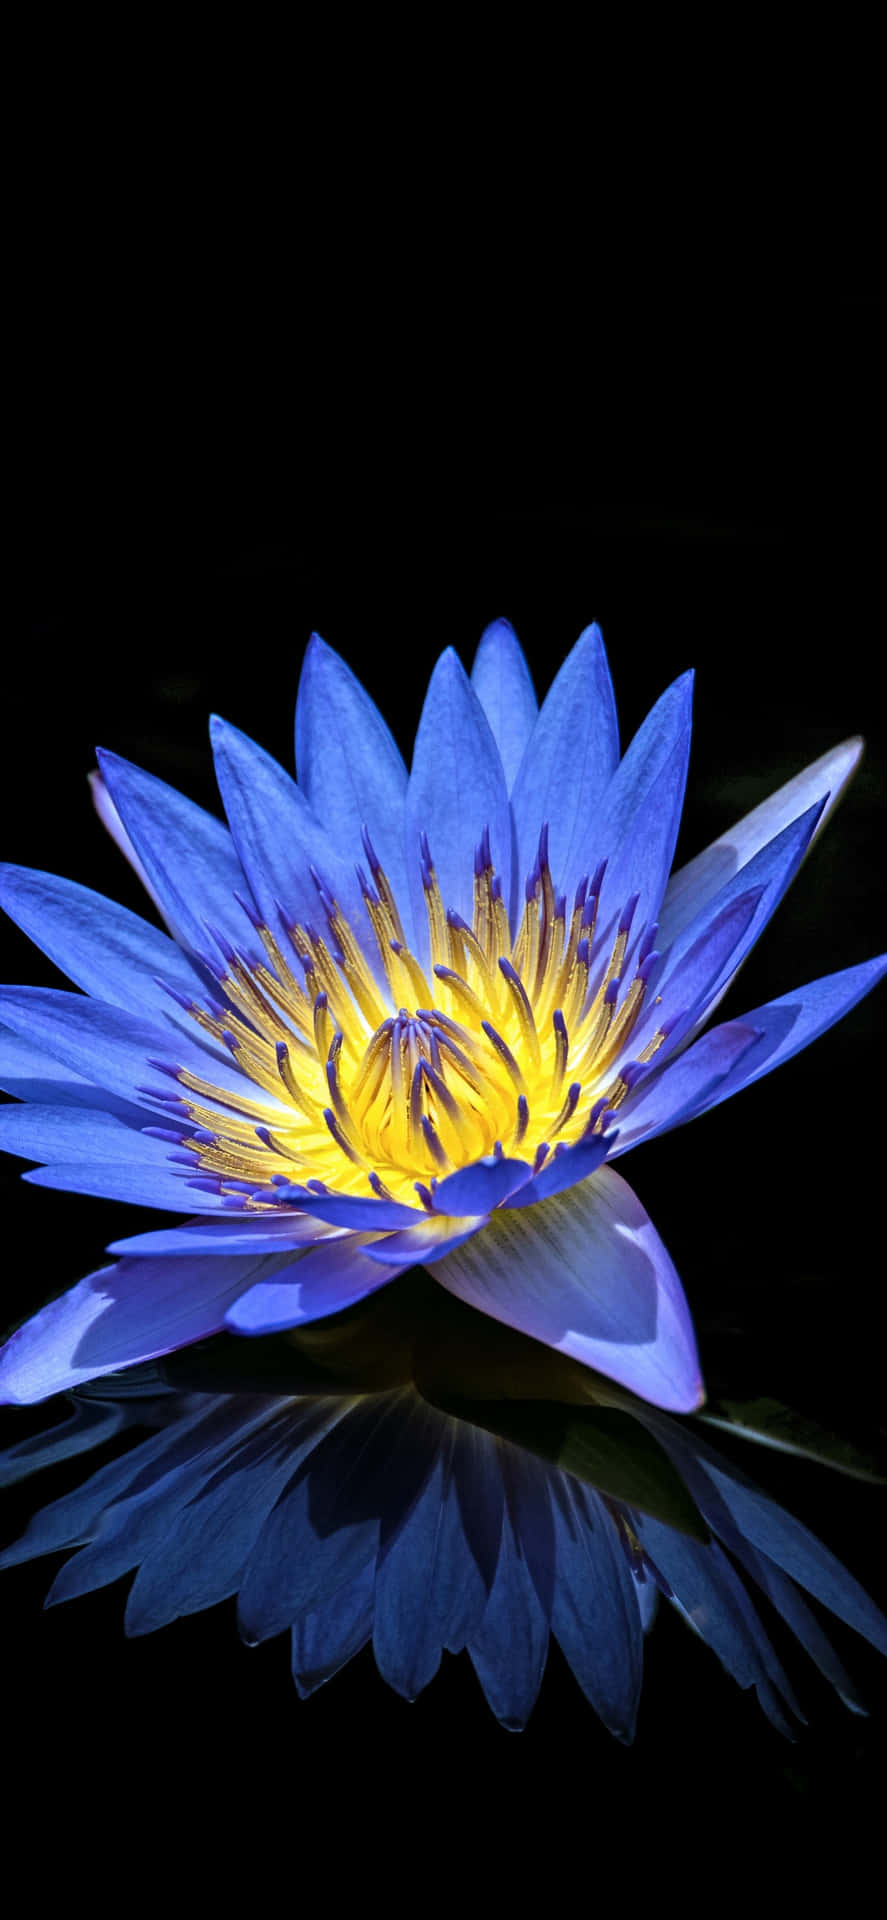 Ägyptischeslotusblumen-bild In Blau